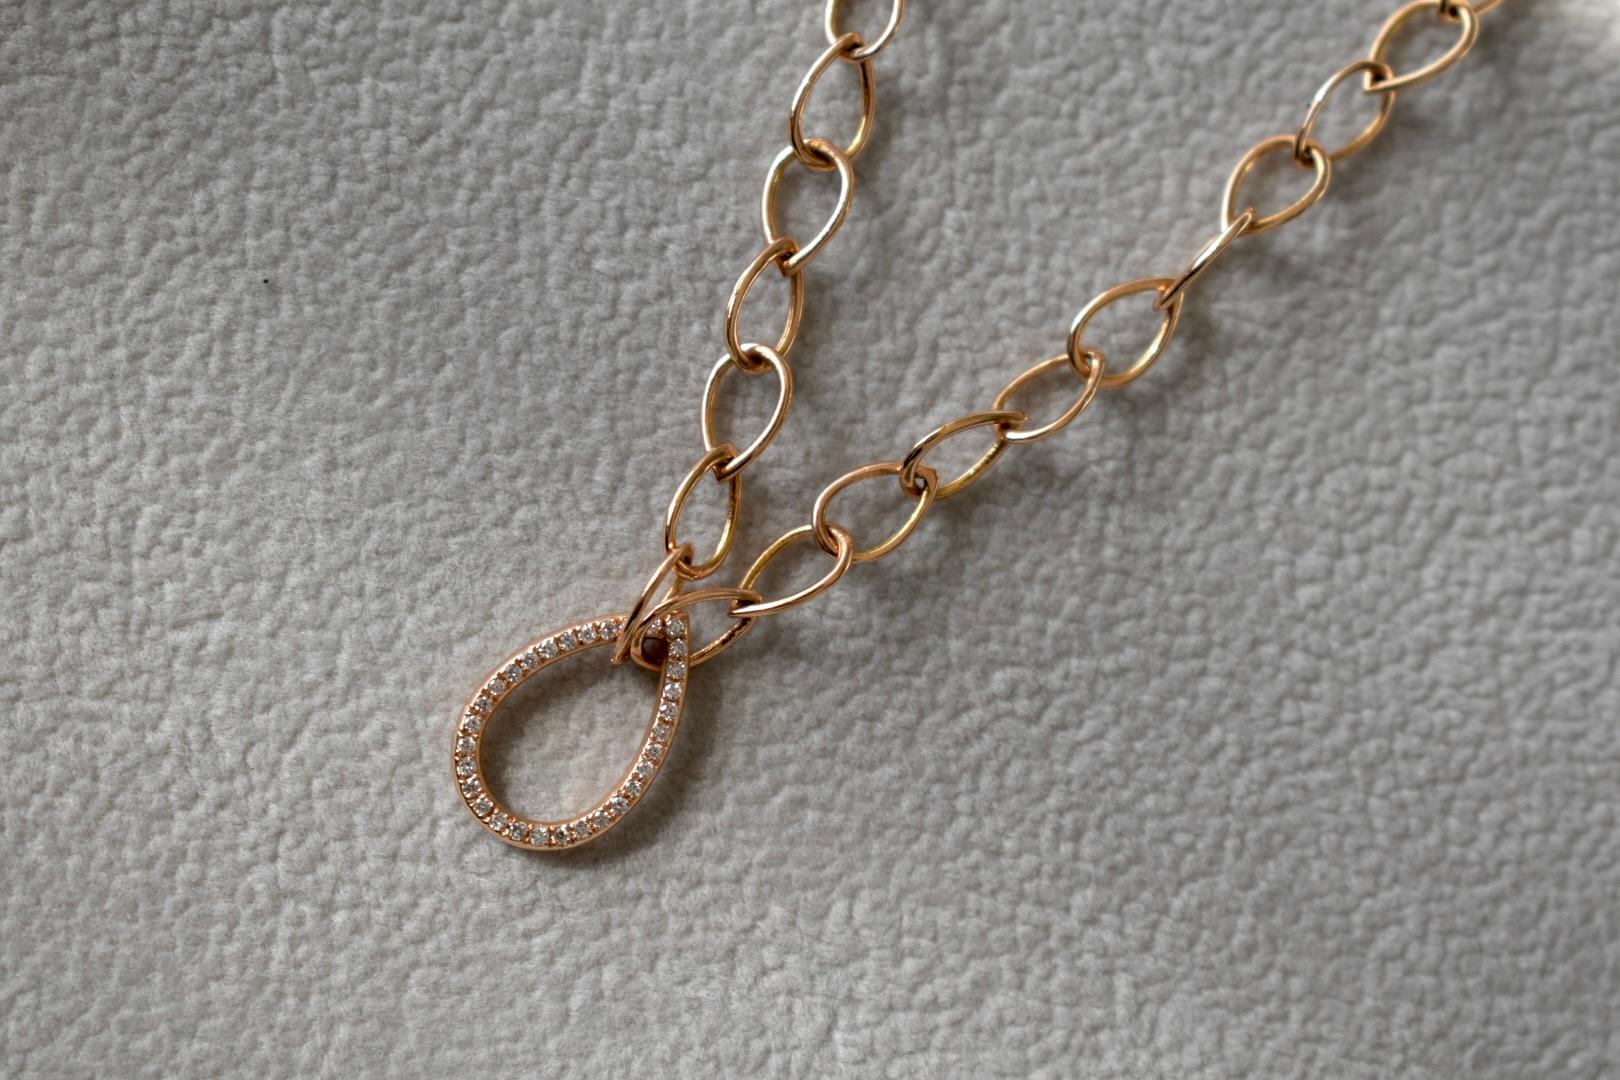 Brilliant Cut Diamond Pear Chain Necklace by Joanna Achkar For Sale